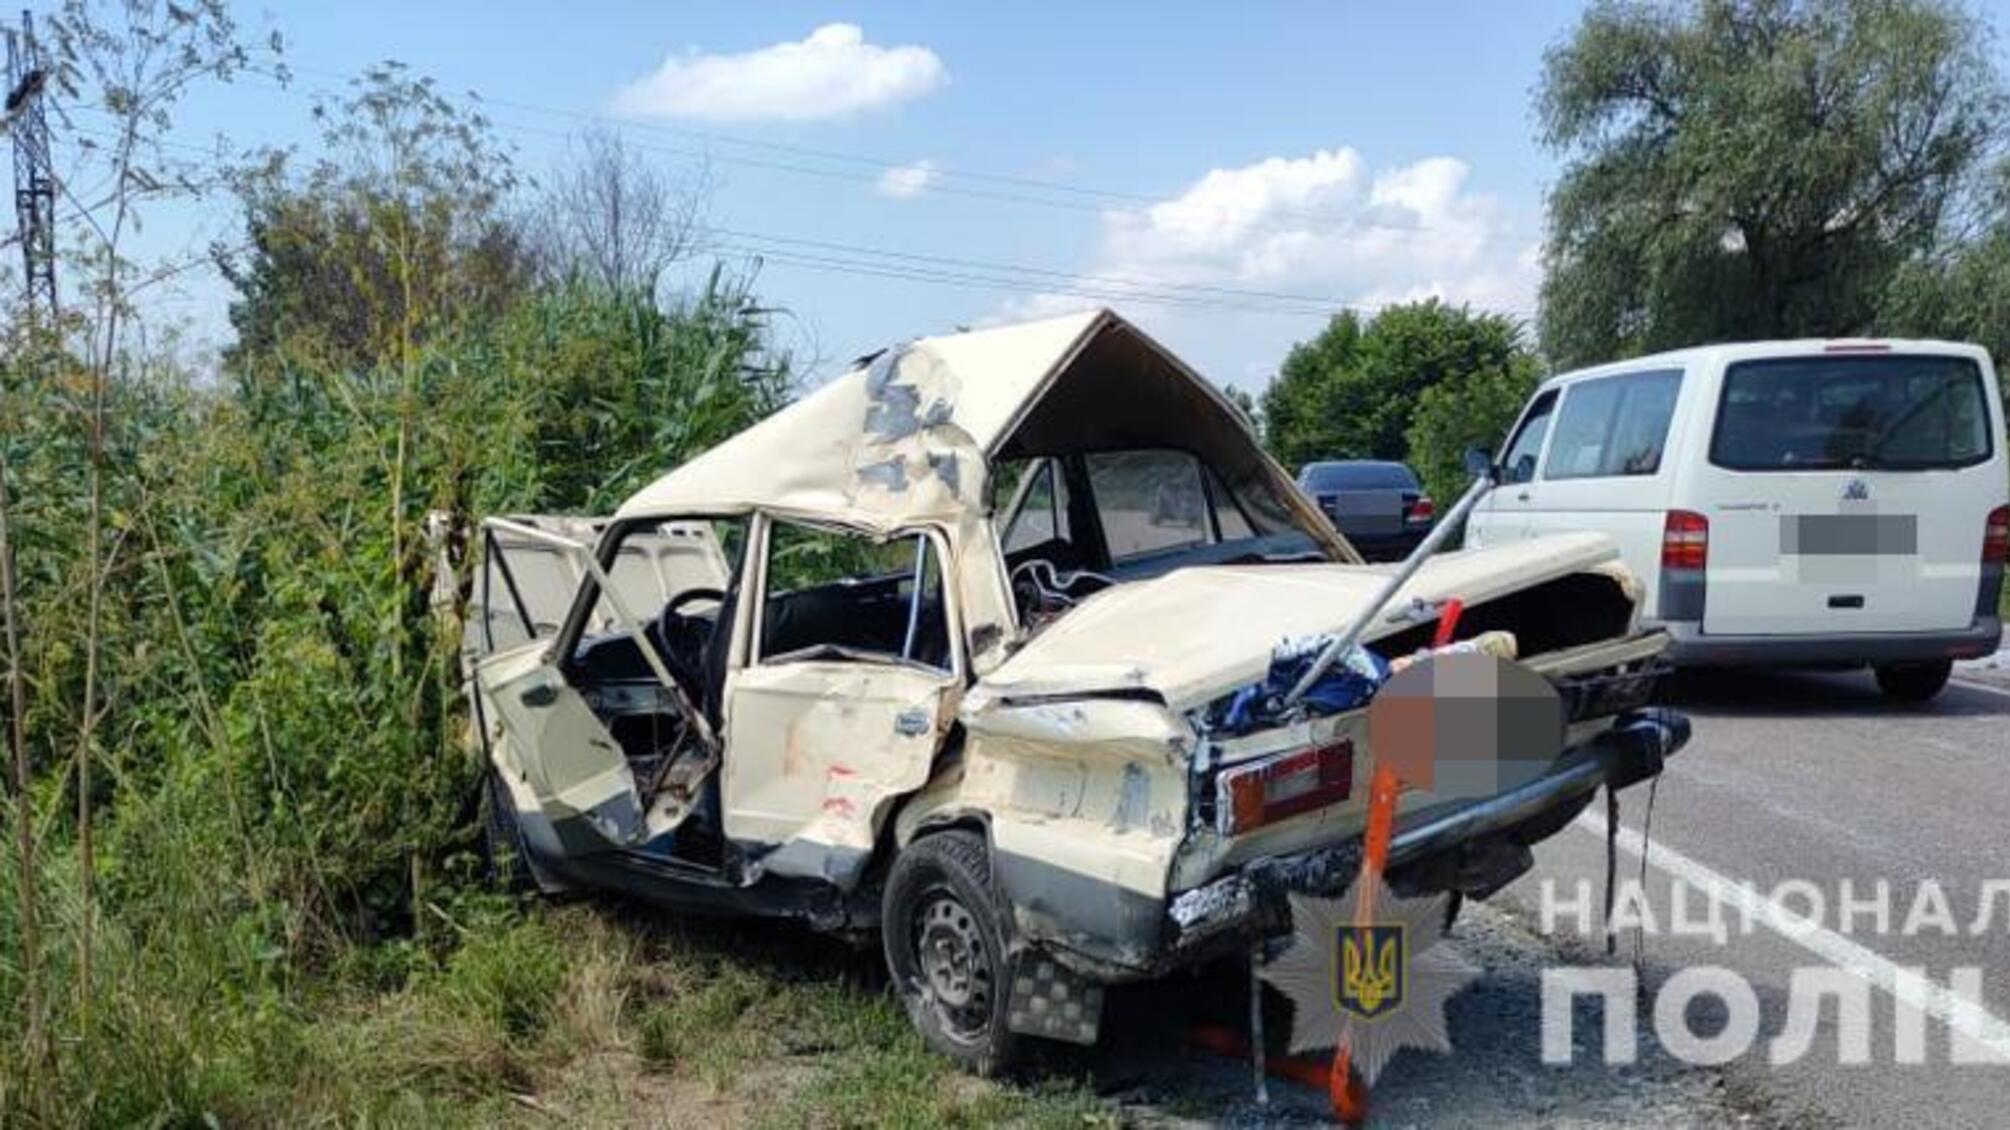 Правоохоронці розслідують обставини смертельної ДТП на трасі Одеса-Рені